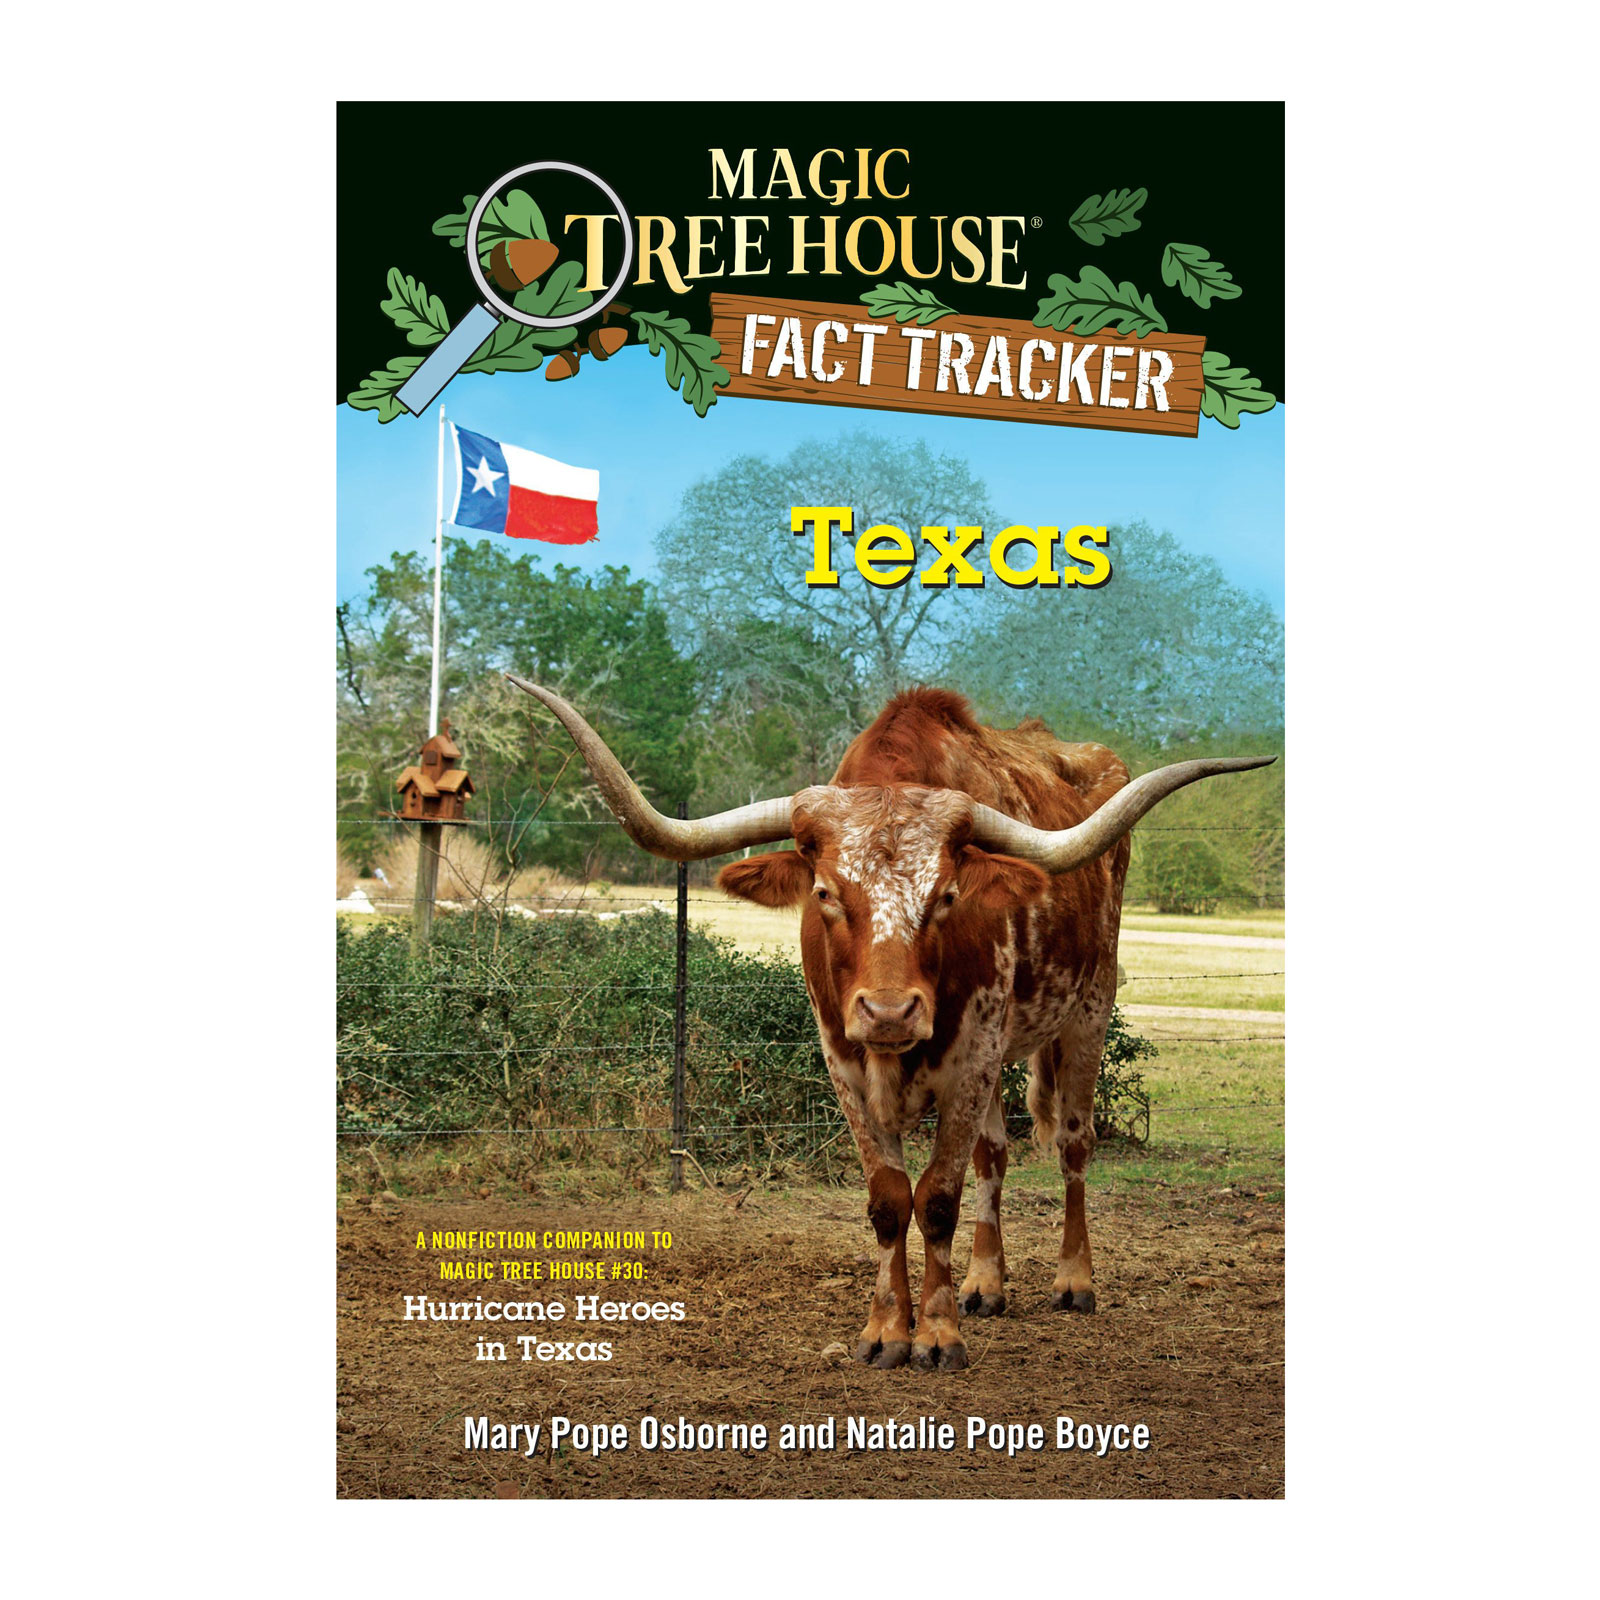 Magic Tree House: Fact Tracker Texas